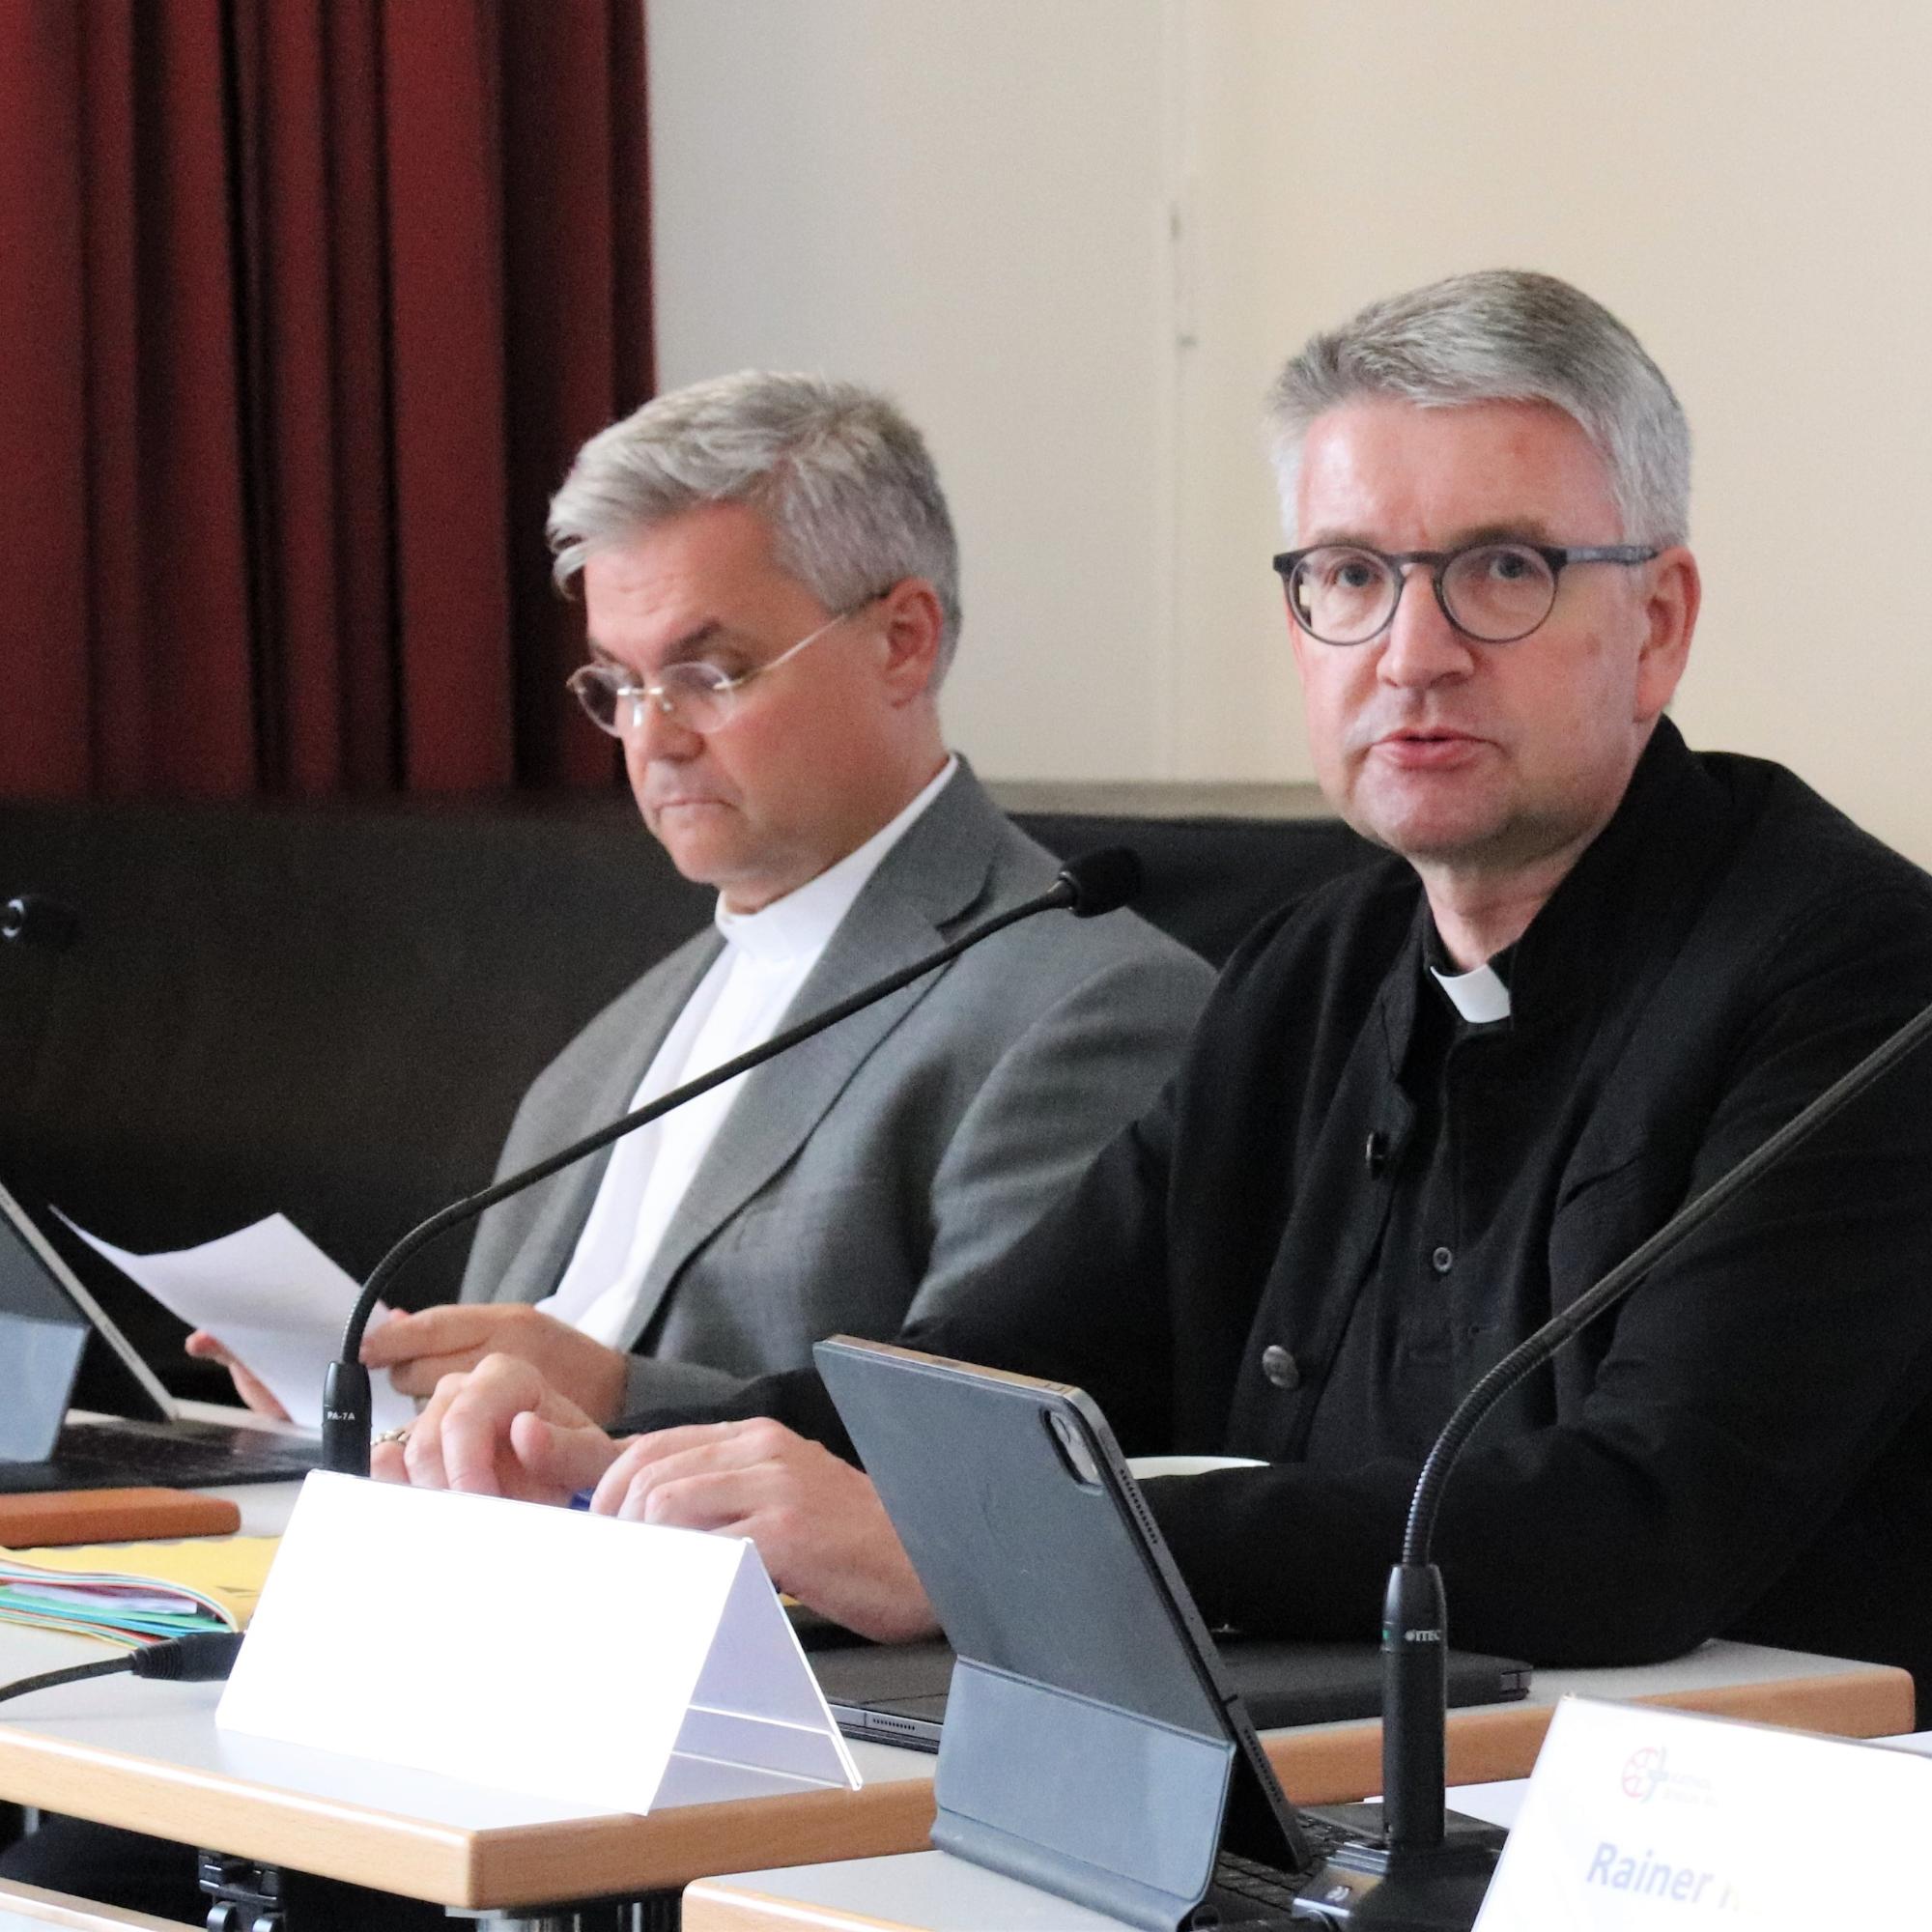 Bischof Peter Kohlgraf und Weihbischof Dr. Udo Markus Bentz (von rechts) bei der Sitzung des Diözesankirchensteuerrats